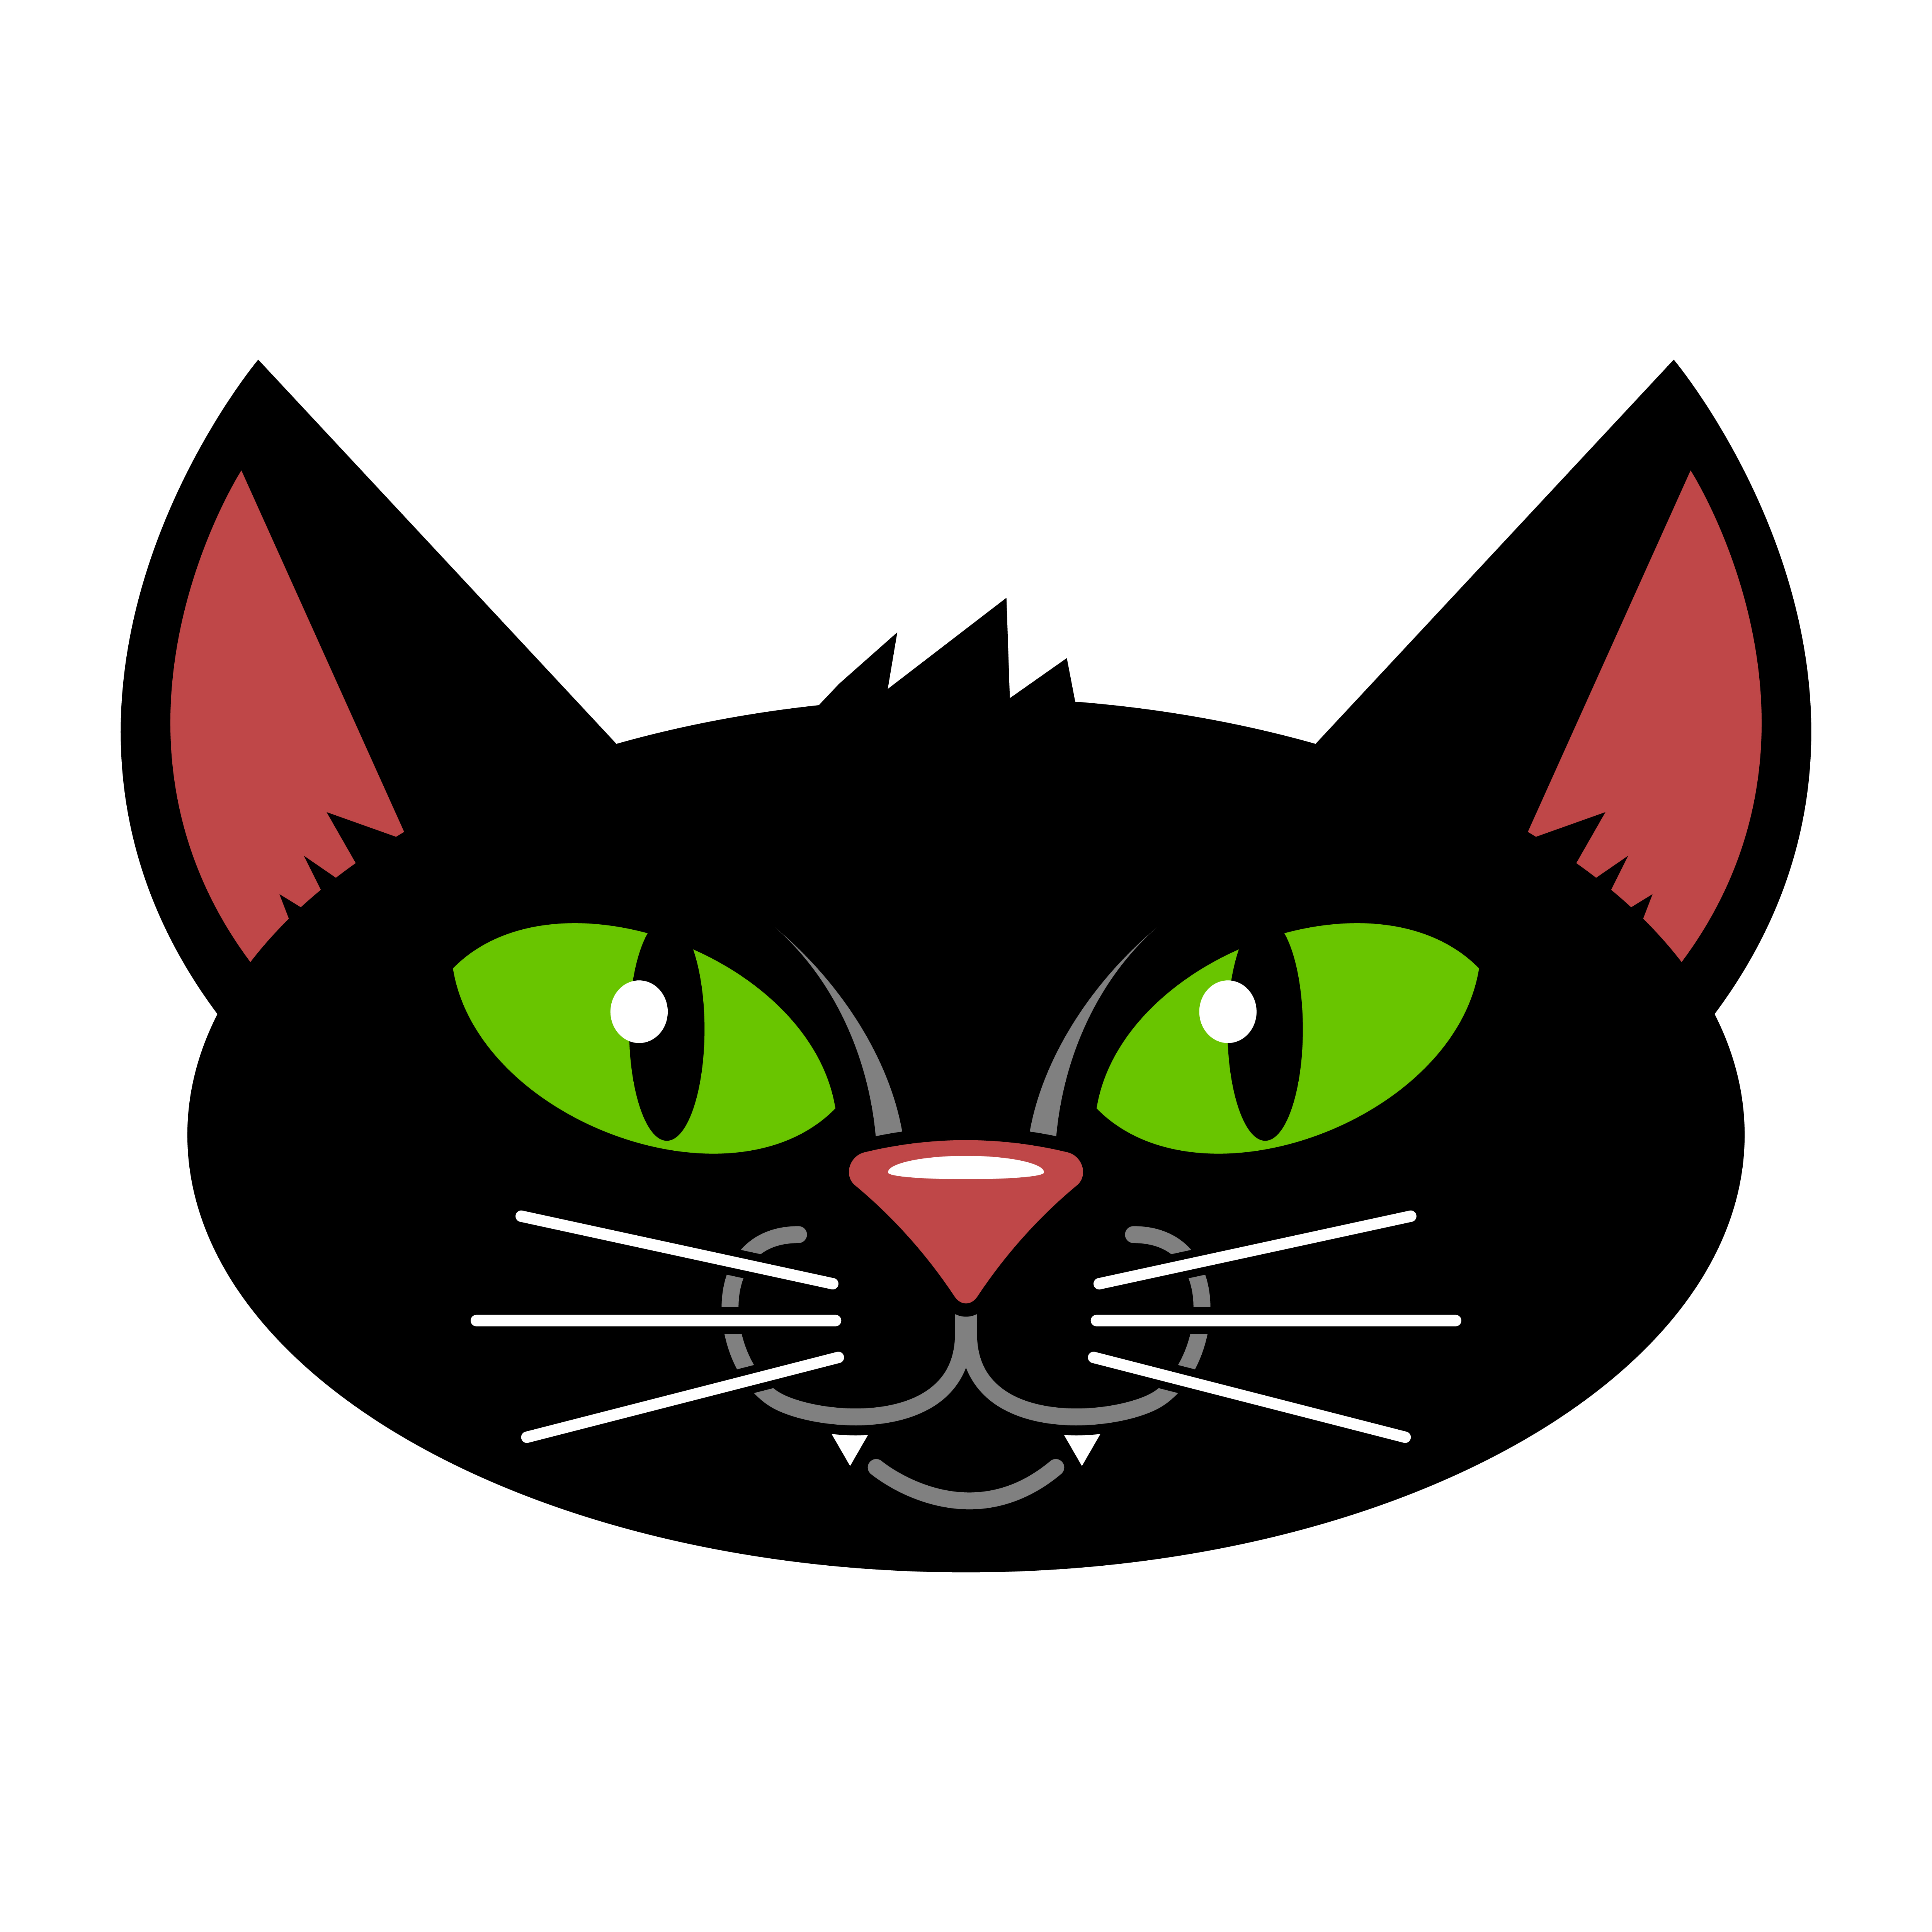 Download Halloween Black Cat - Download Free Vectors, Clipart ...